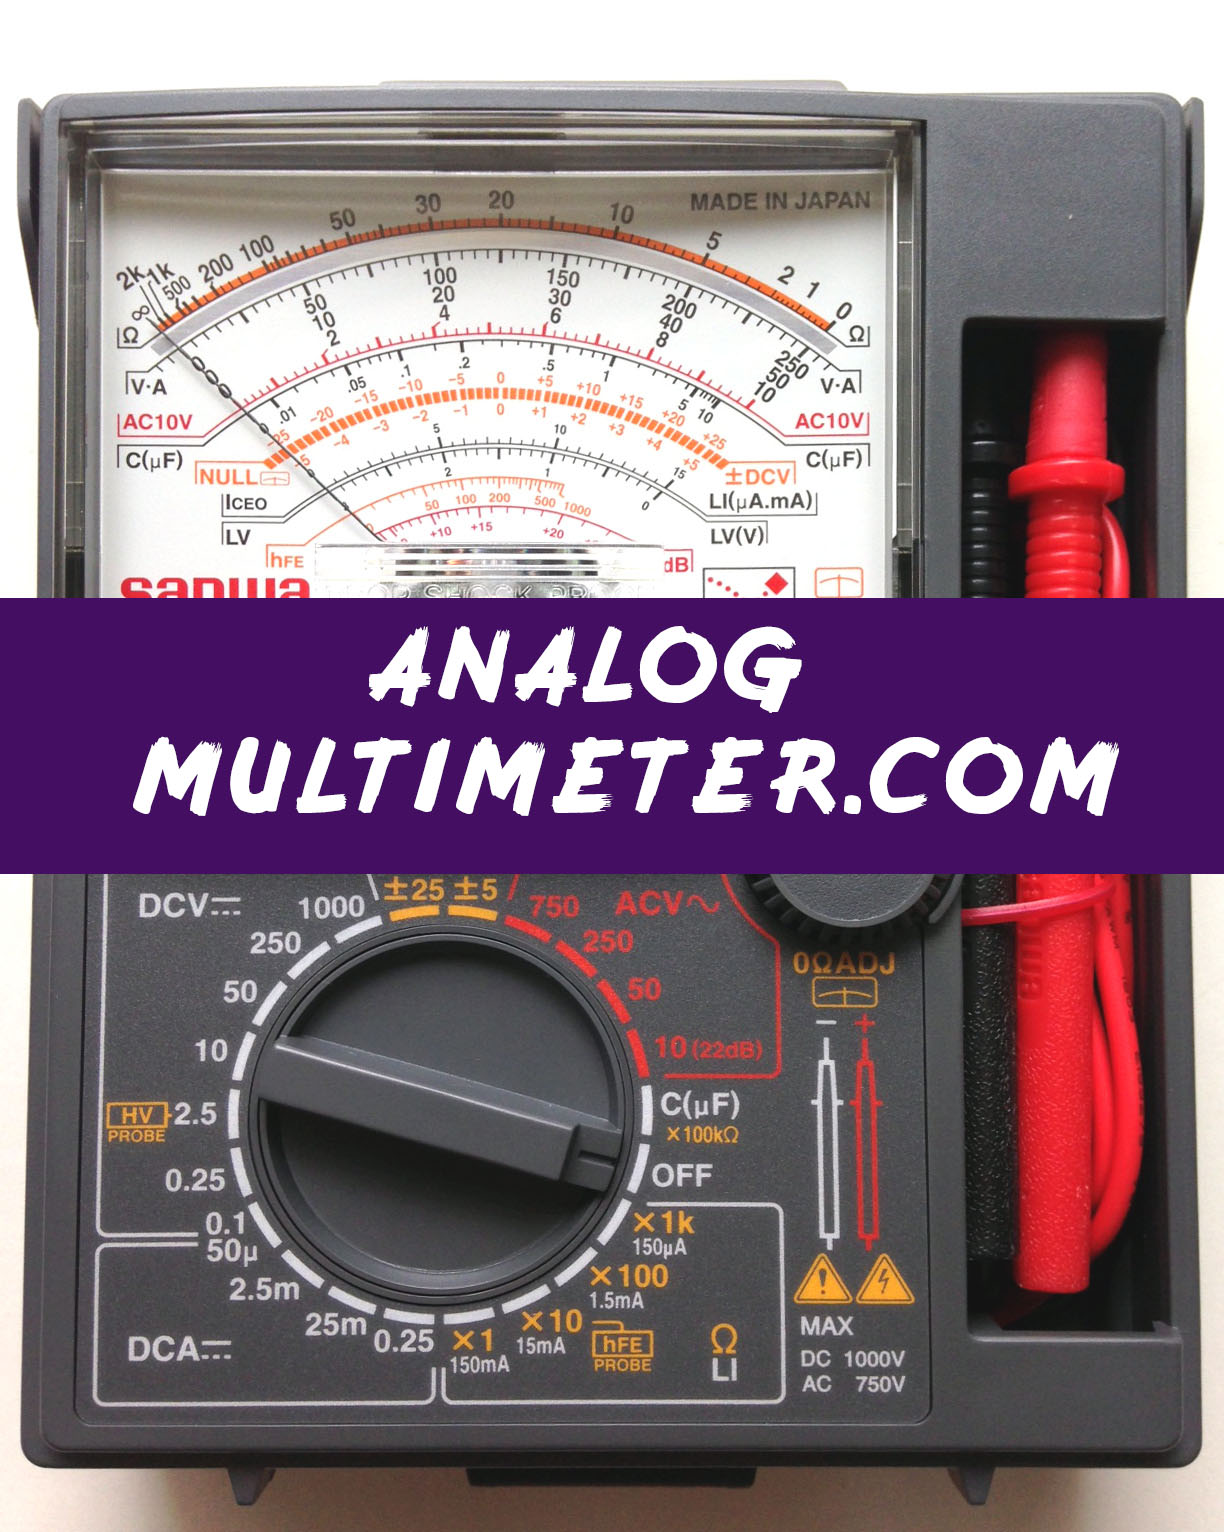 AnalogMultimetercombanner.jpg